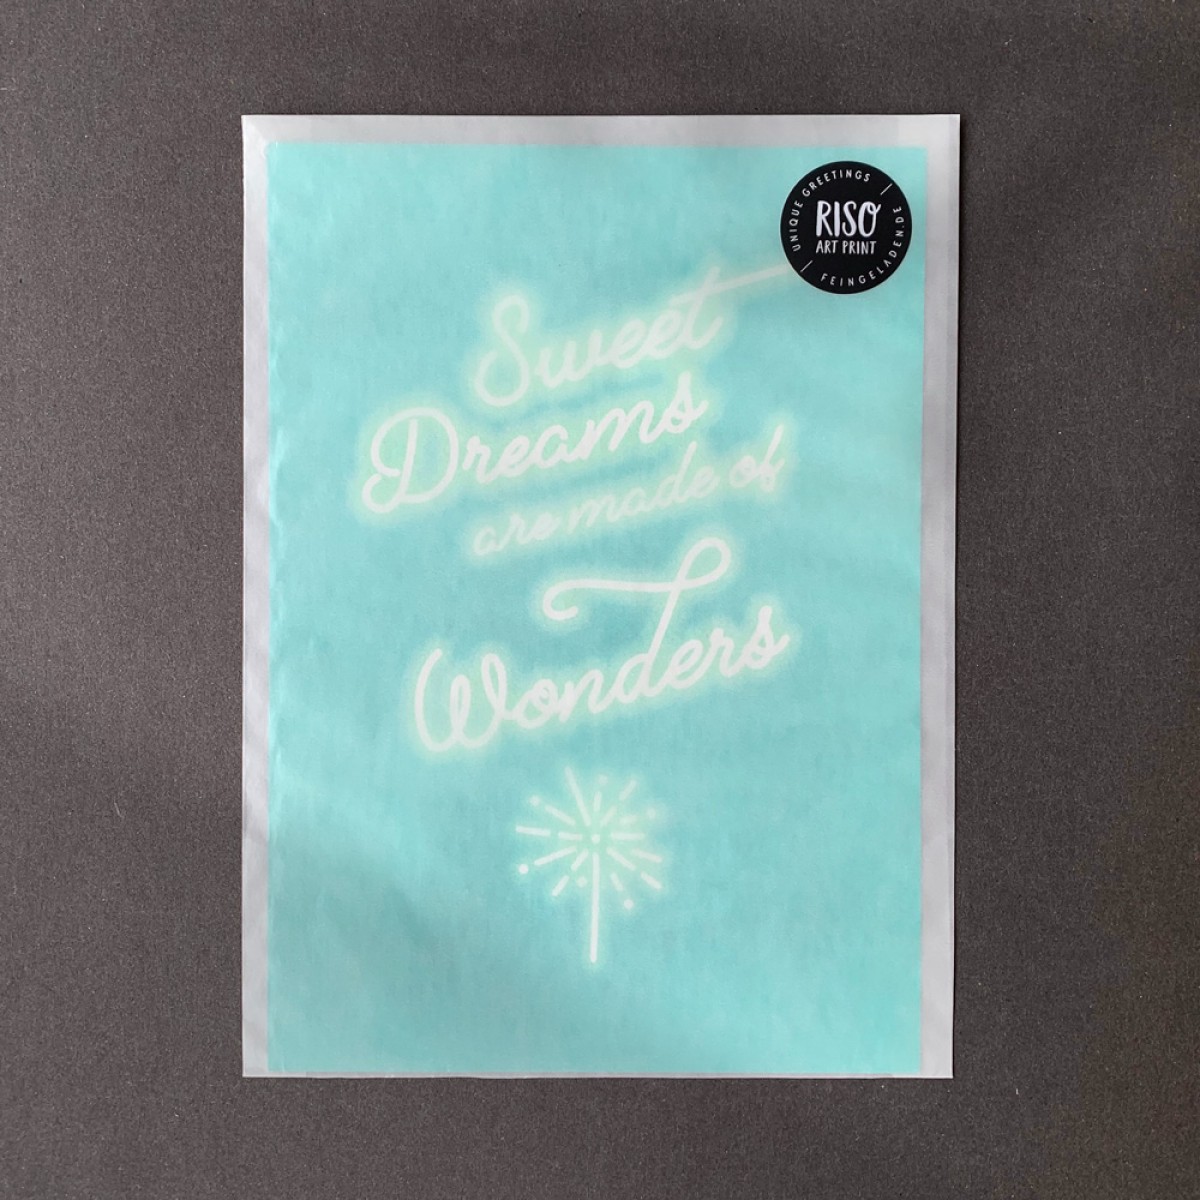 Feingeladen / KARAOKE INSPIRED / Sweet Dreams / A5